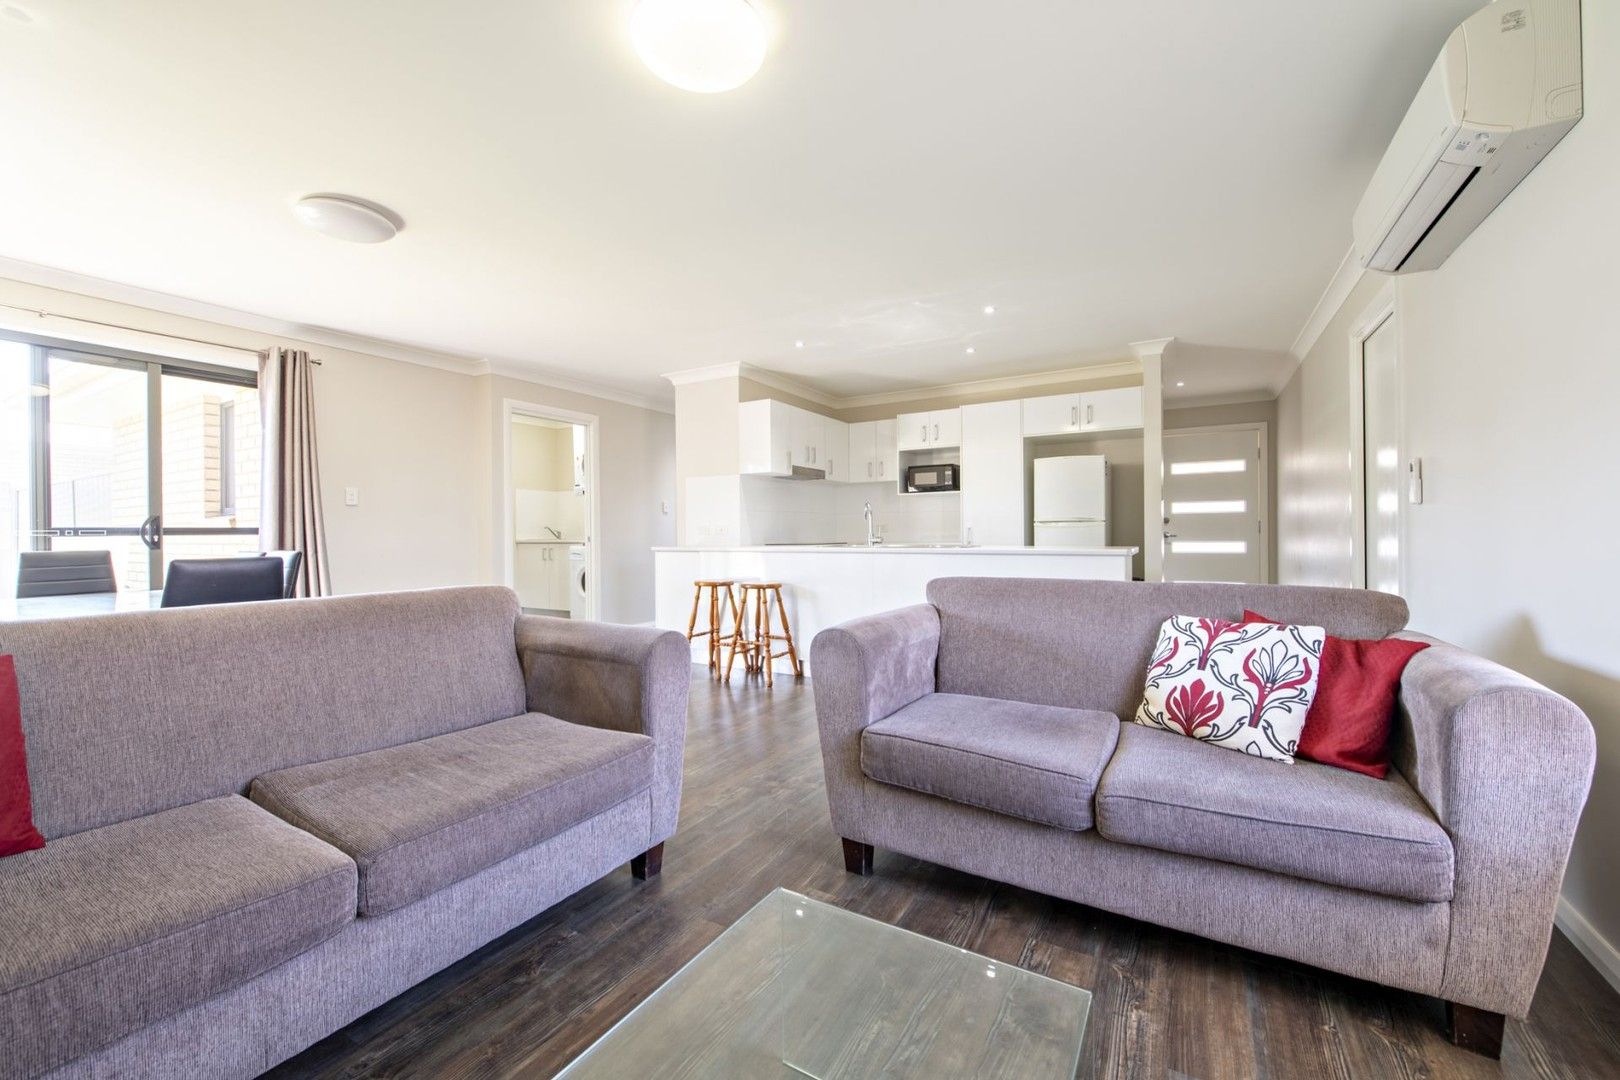 2 bedrooms Villa in 2/46 Macleay Street DUBBO NSW, 2830